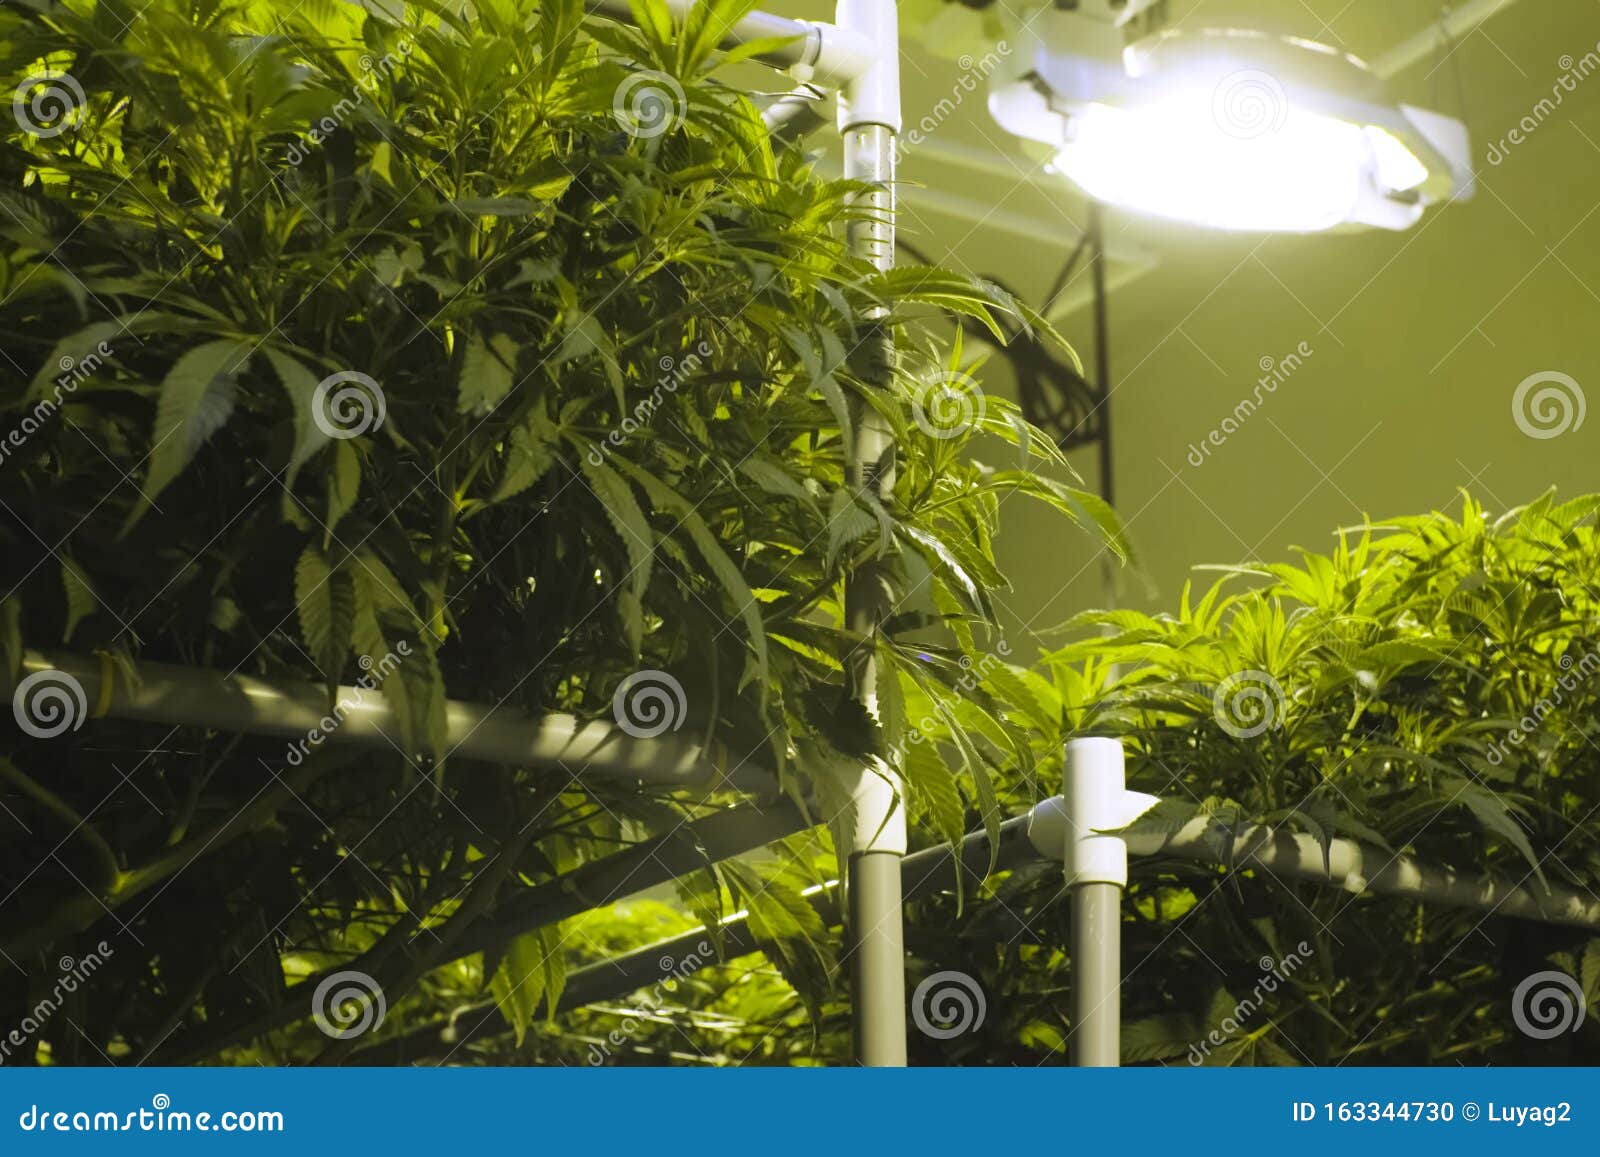 Листья и стебли конопли женское и мужское растение марихуаны